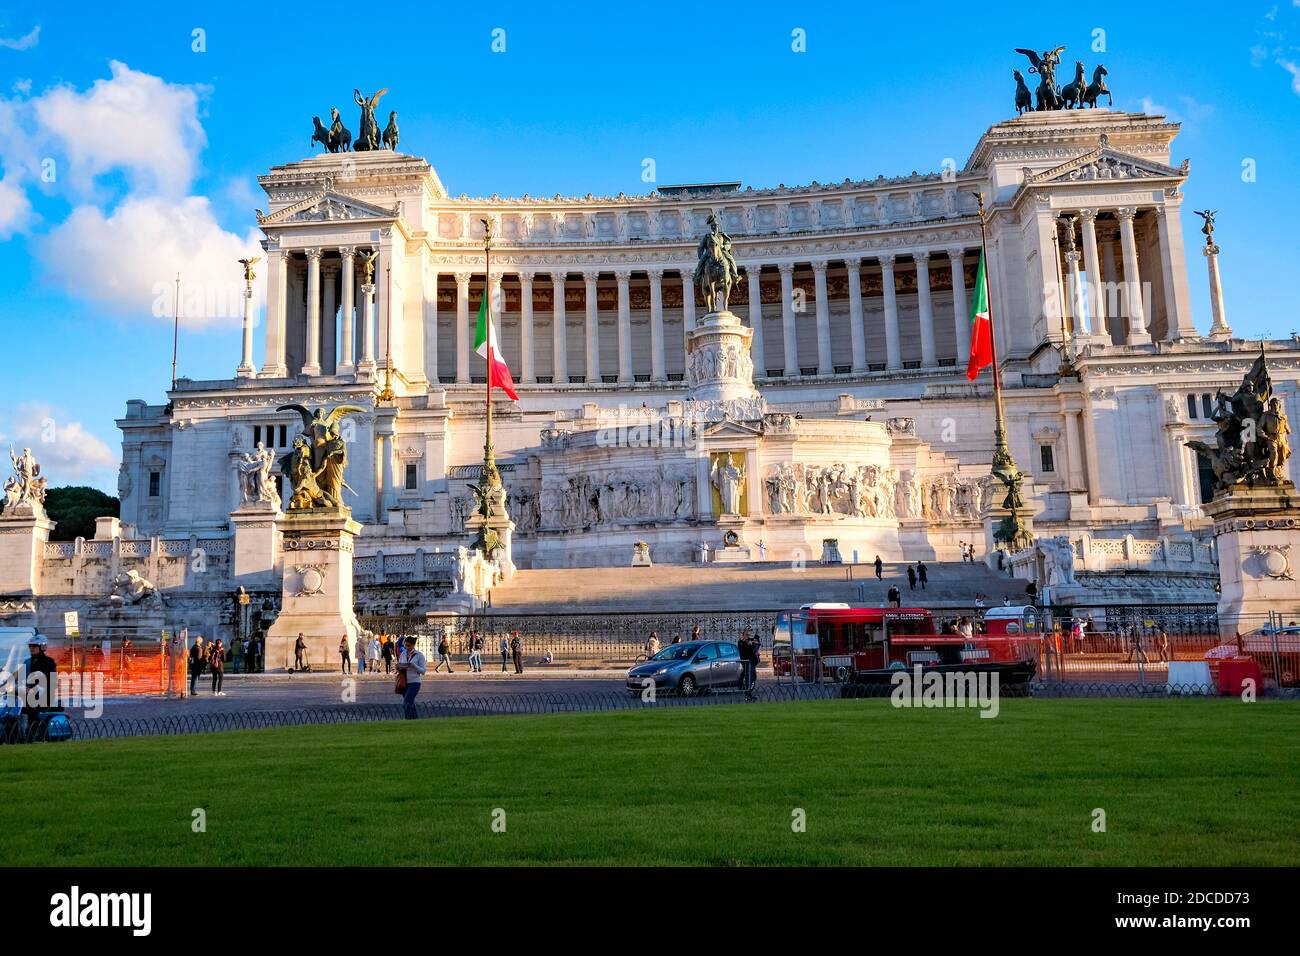 Altare della Patria / Victor Emmanuel II Monument - Symbol of Italian unification - Rome, Italy Stock Photo